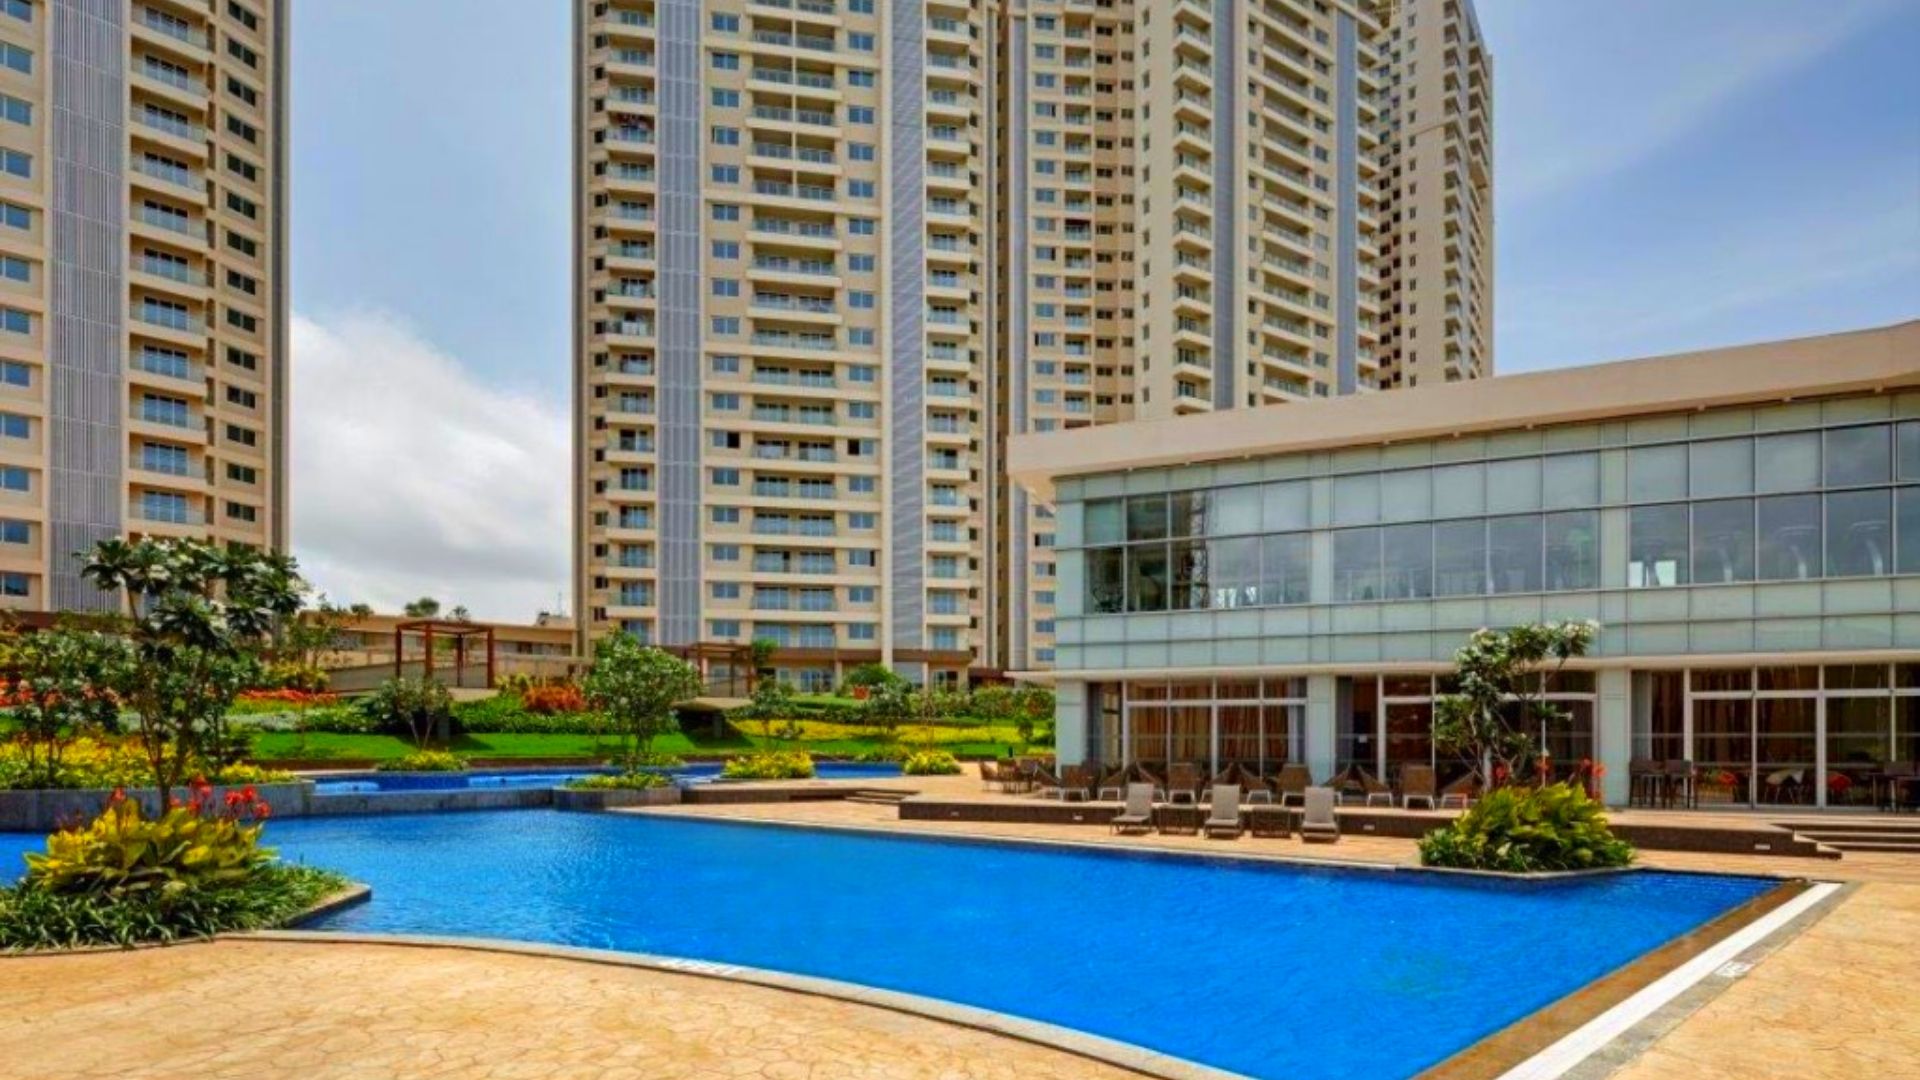 Top Luxury Apartments in Bangalore - LuxuryProperties.in